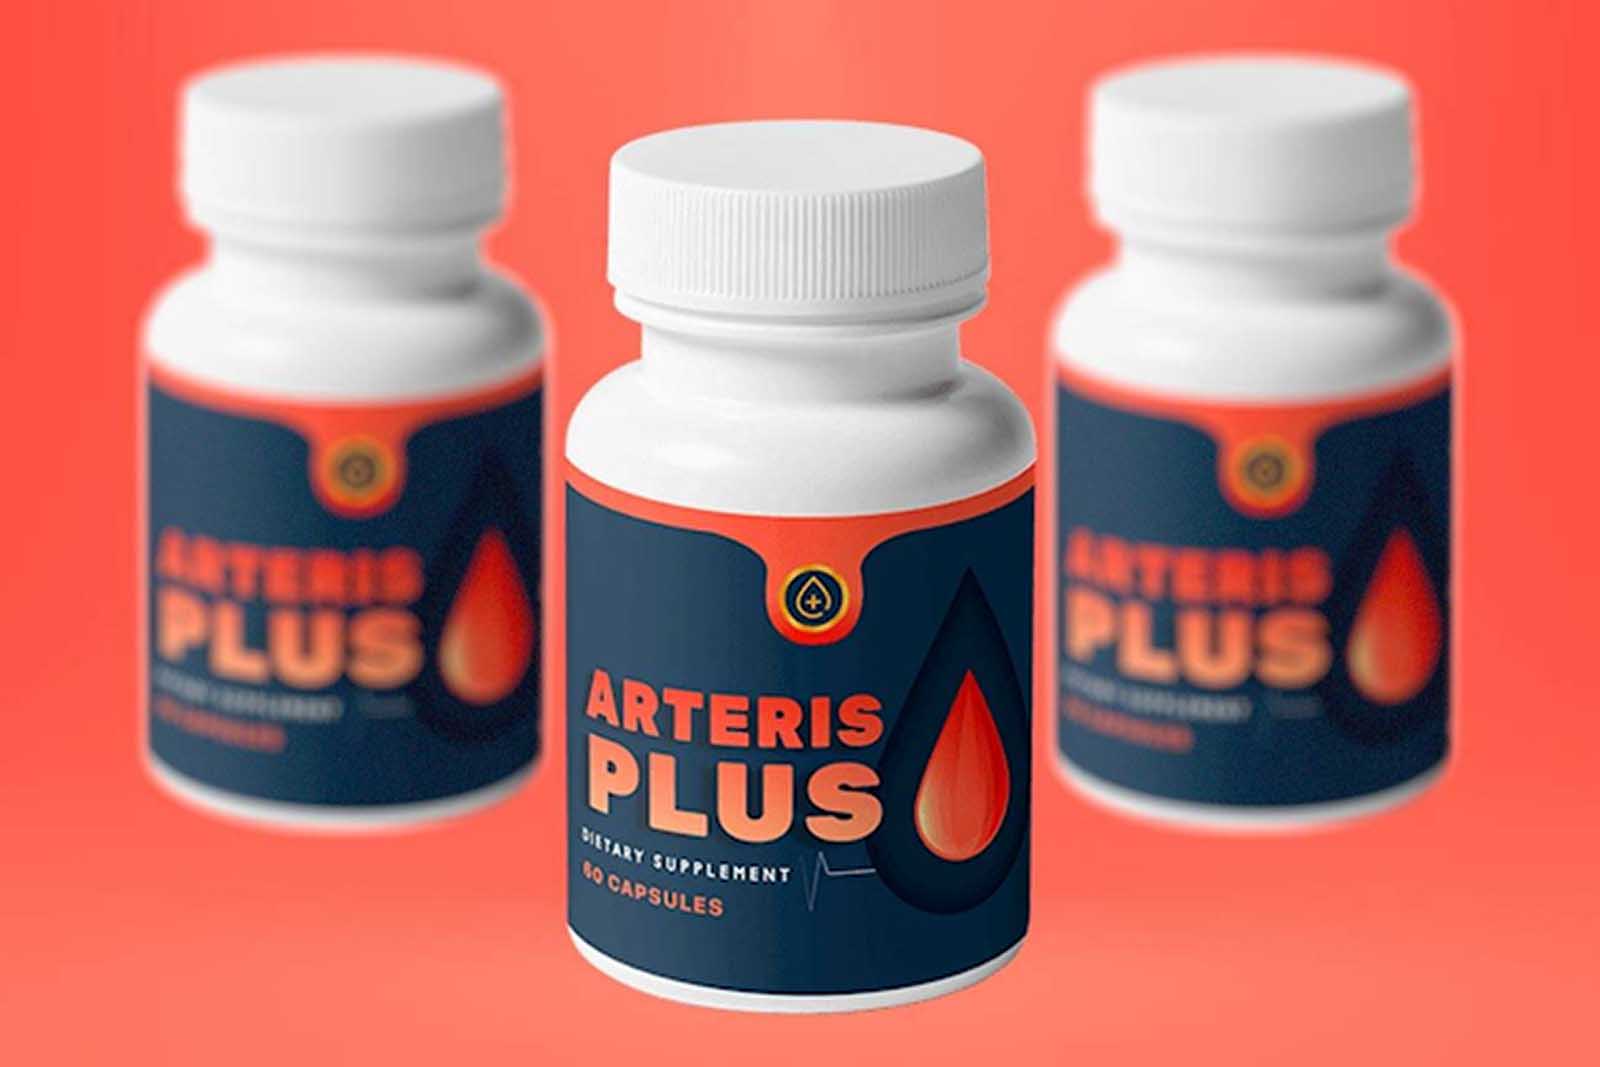 Arteris Plus